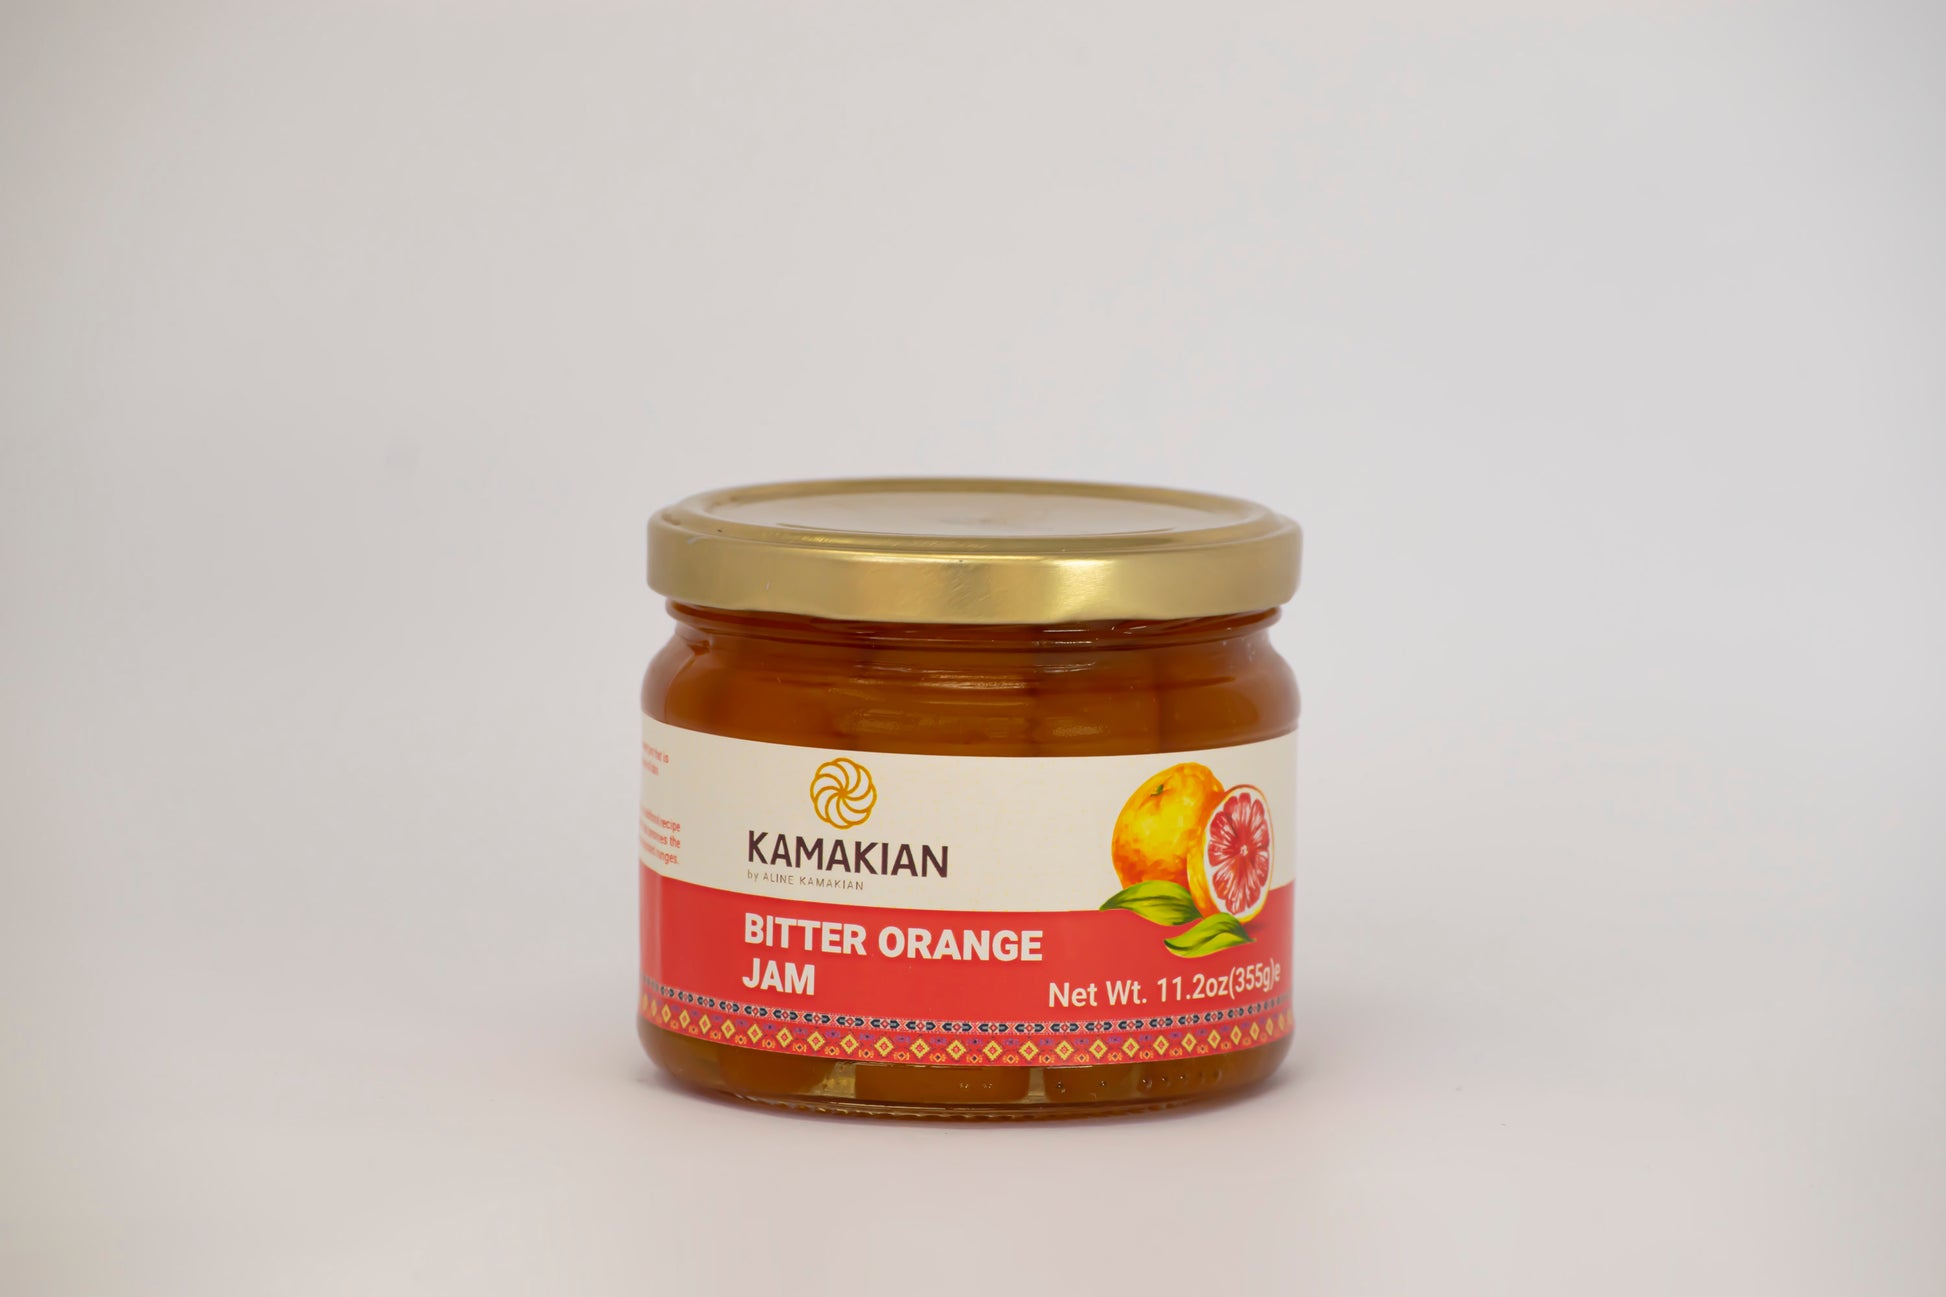 Bitter Orange Jam made in Lebanon